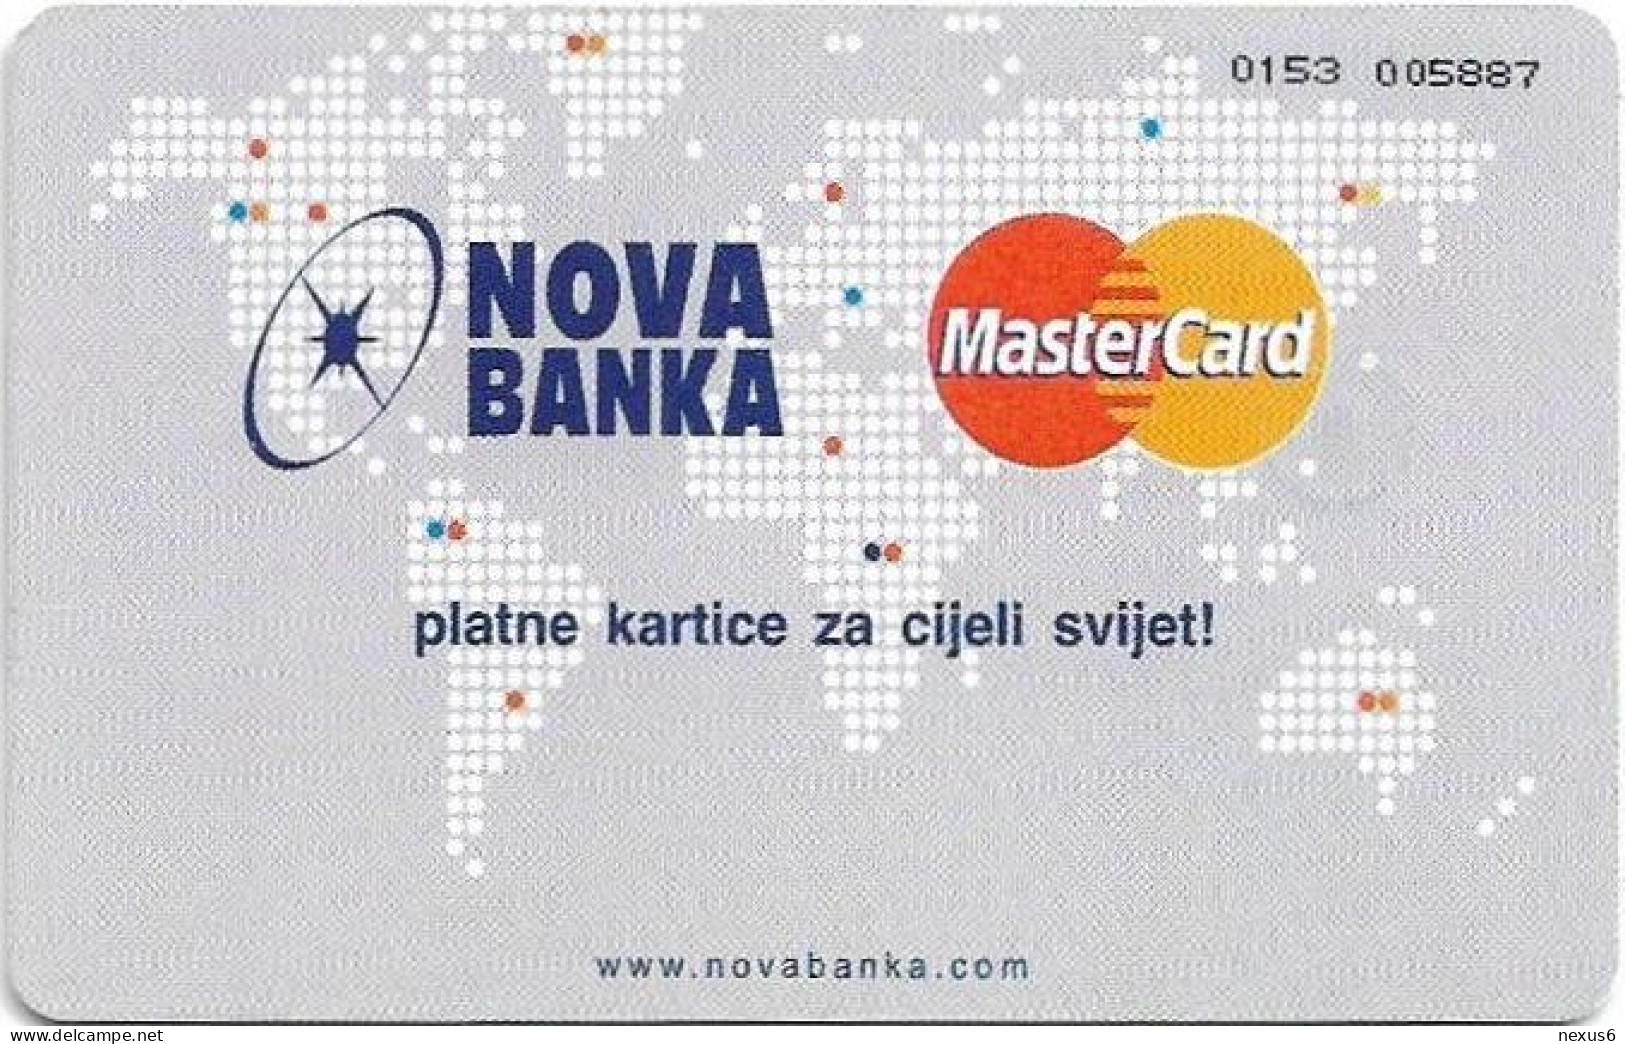 Bosnia - Republika Srpska - Nova Banka - Mastercard 1, Gem5 Red, 01.2005, 150Units, Used - Bosnië